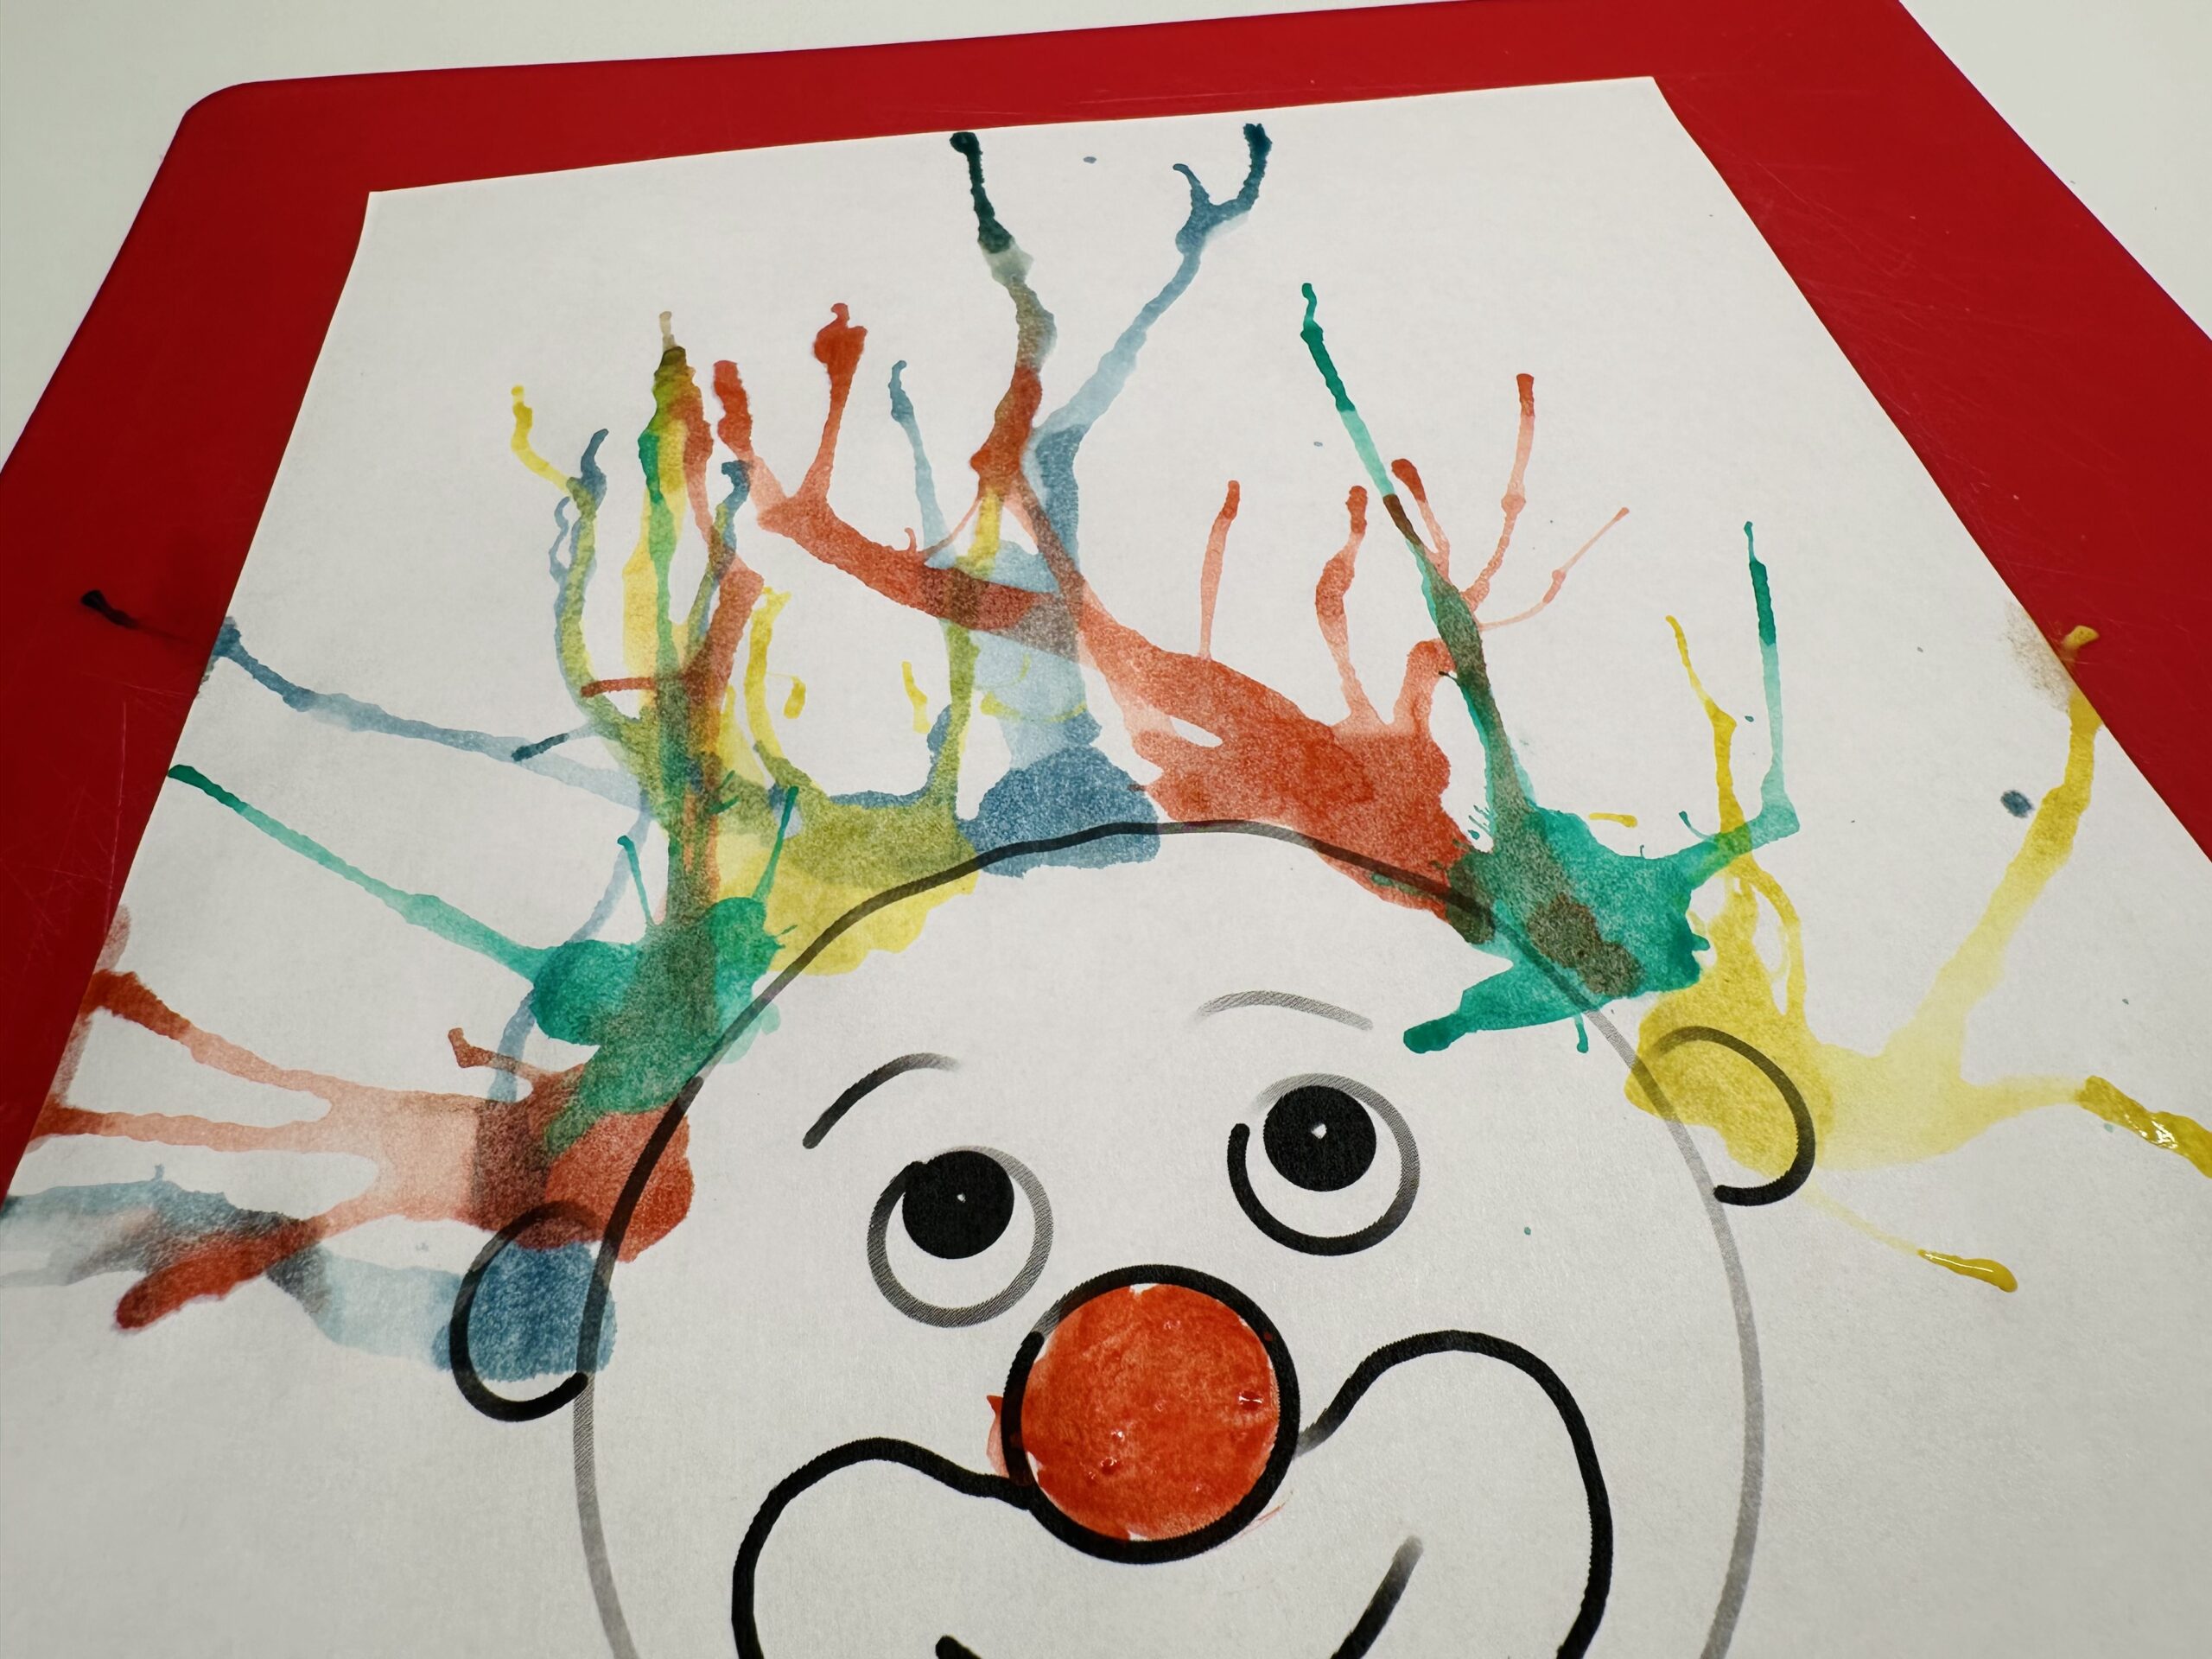 Bild zum Schritt 15 für das Bastel- und DIY-Abenteuer für Kinder: 'Fertig ist euer buntes Faschingsbild/ Clowngesicht.'